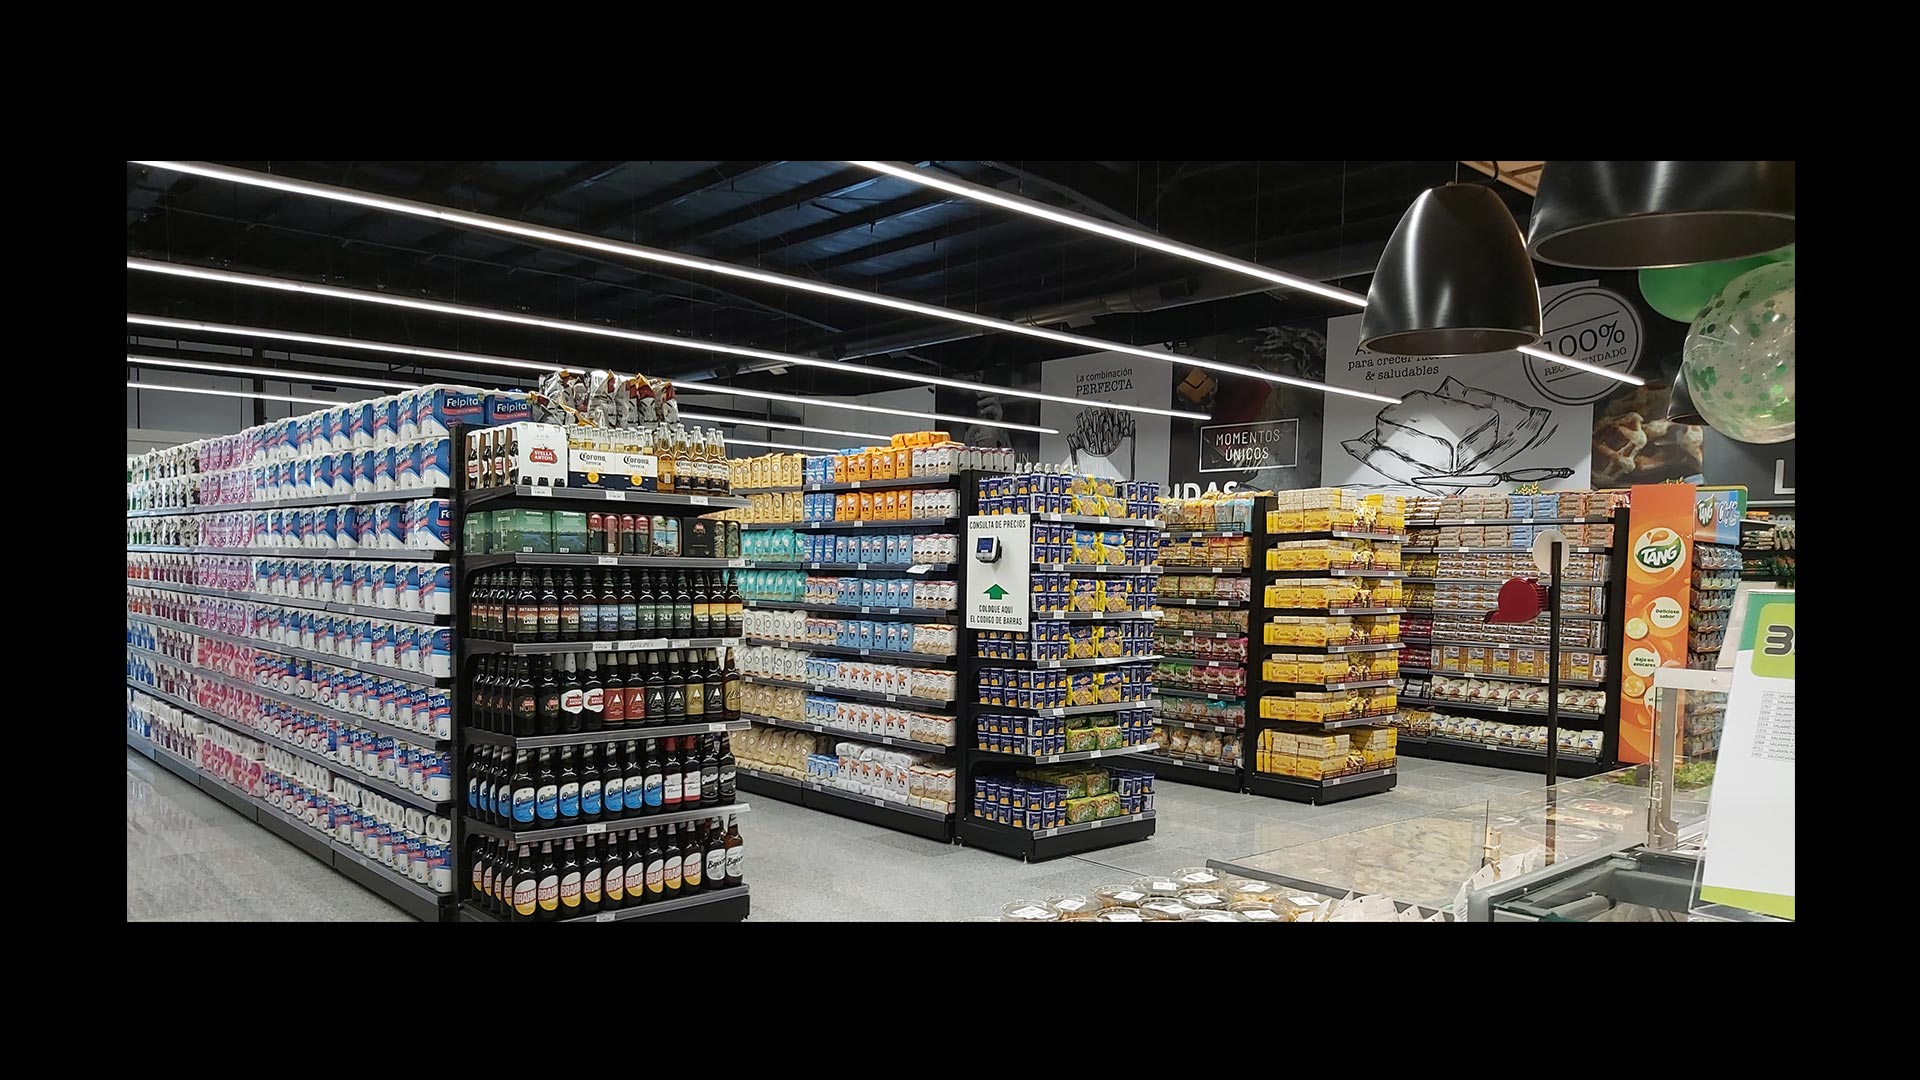 Supermercado 3M